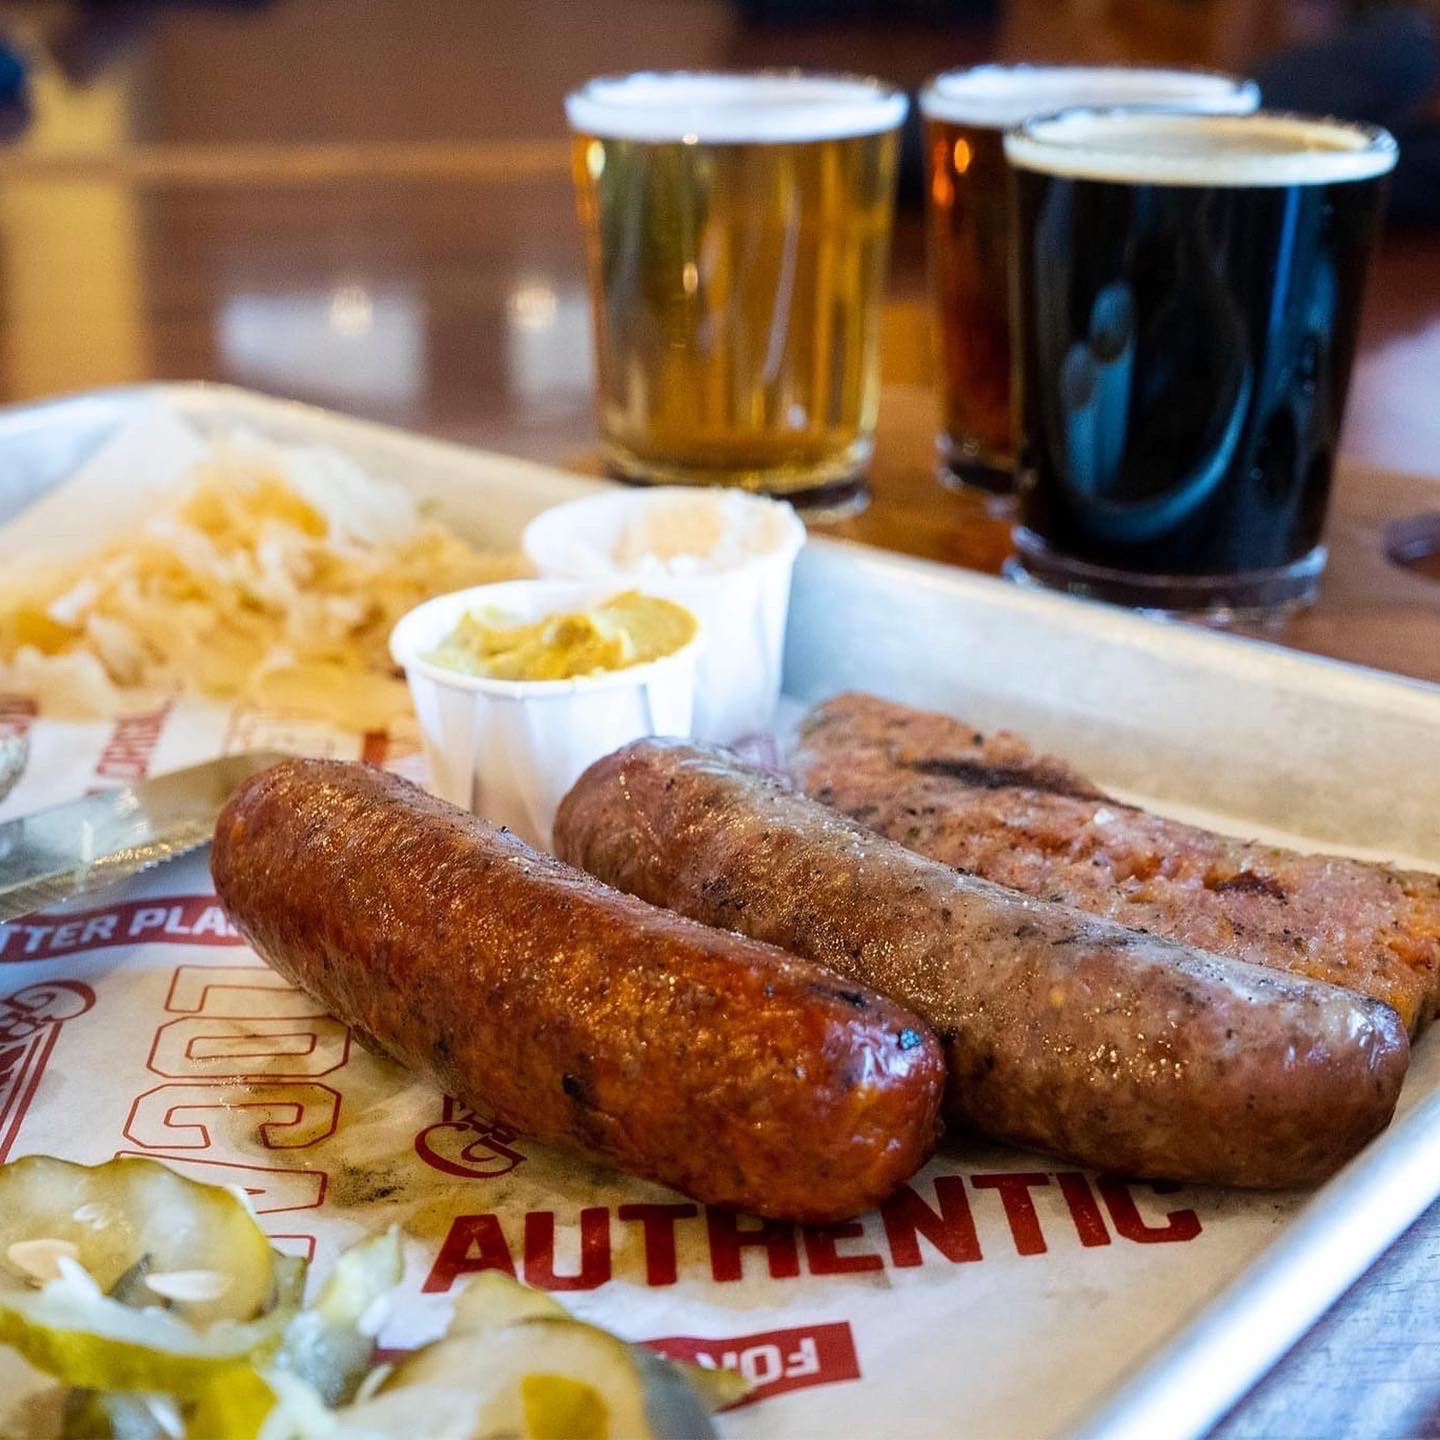 Sausage + Beer Flight at Great Basin